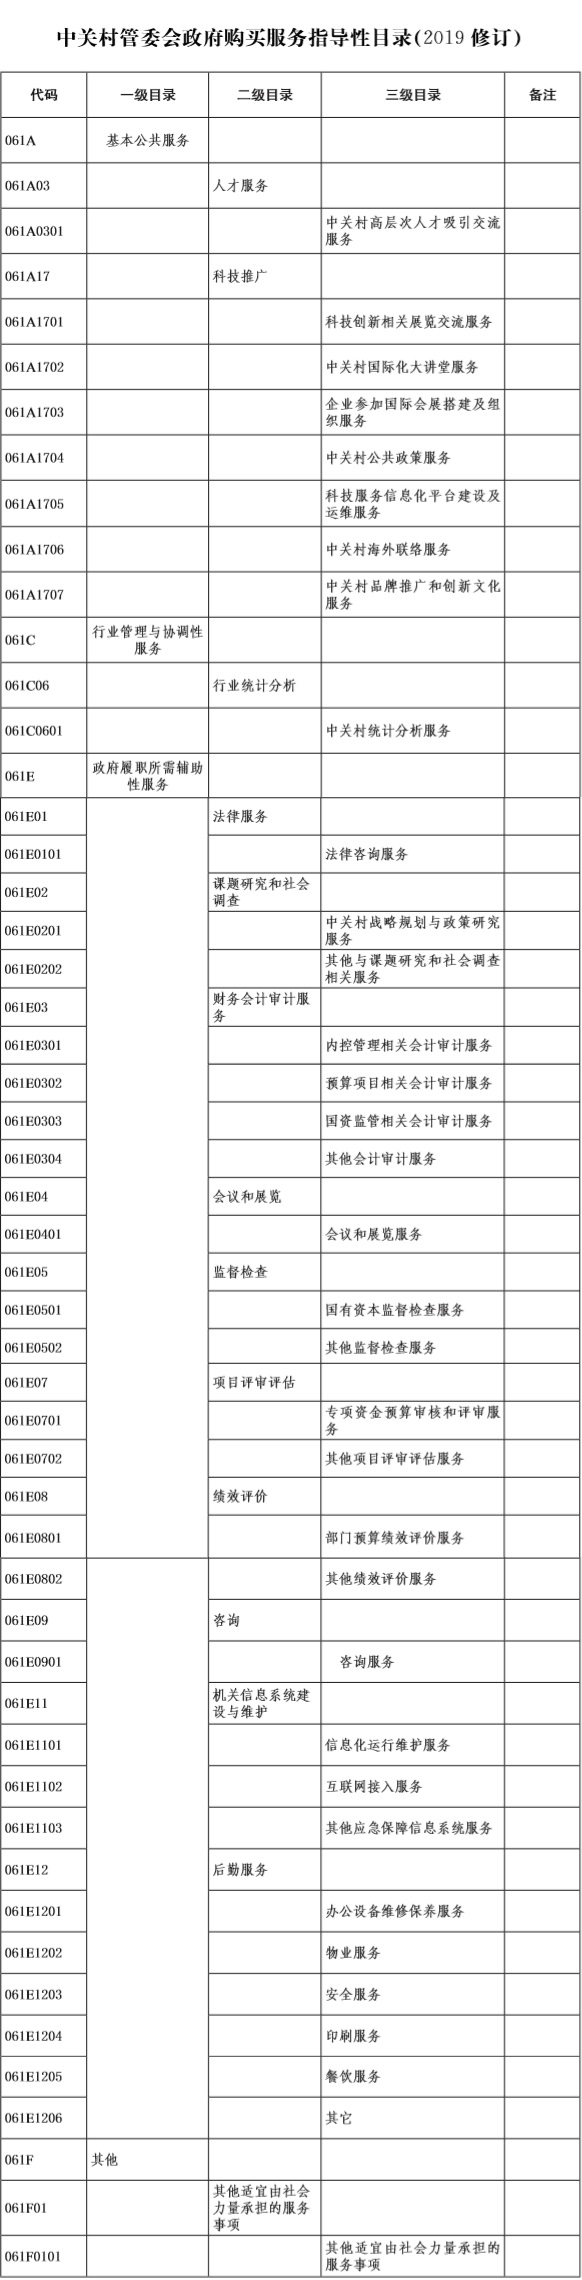 38-中关村管委会政府购买服务指导性目录(2019修订).jpg